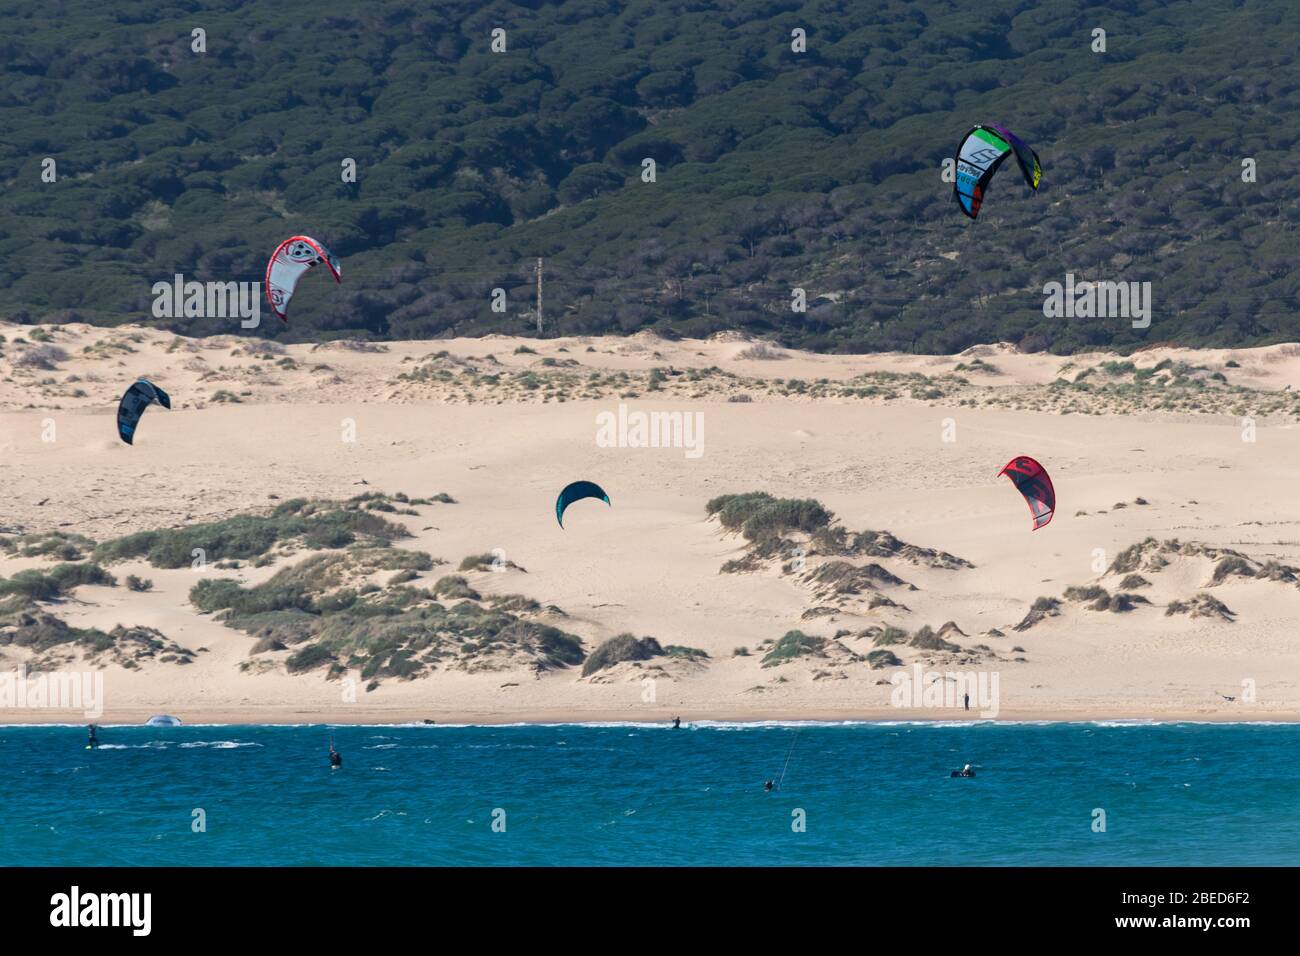 Tarifa, Spain. 3rd February, 2020. Many kitesurfers doing sports in the Atlantic ocean near the windy Bolonia beach Stock Photo